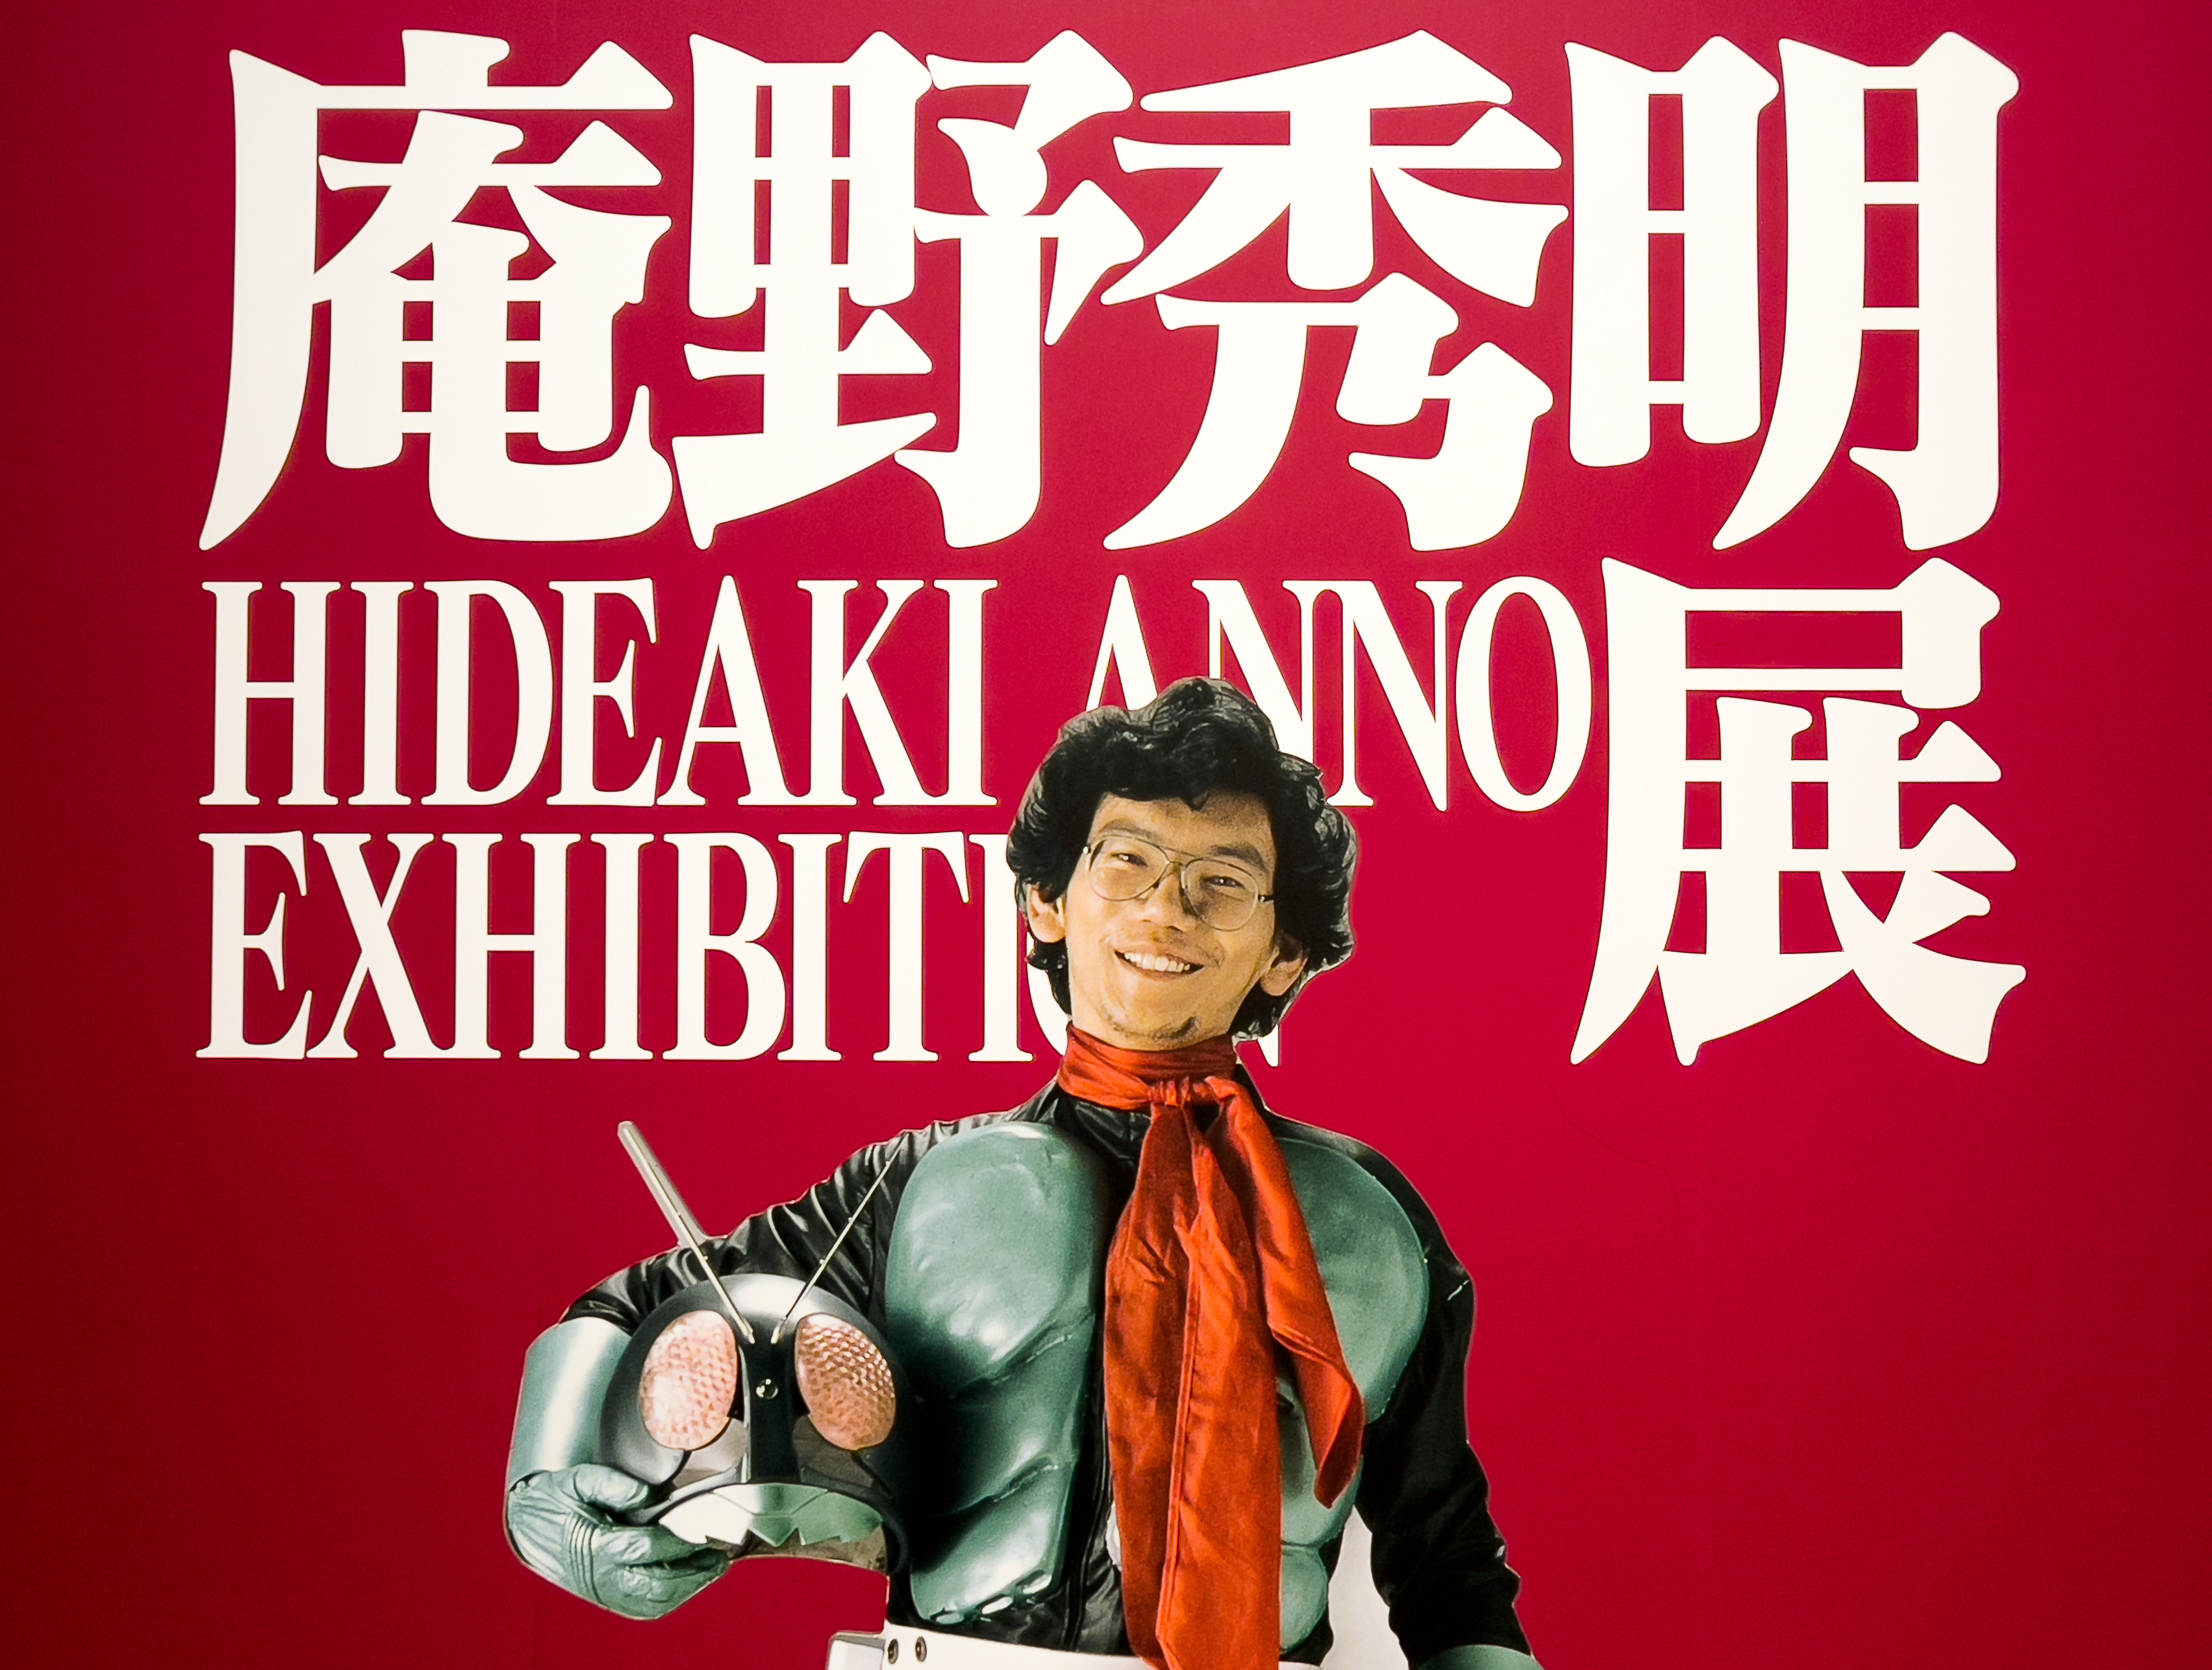 The Hideaki Anno Exhibition